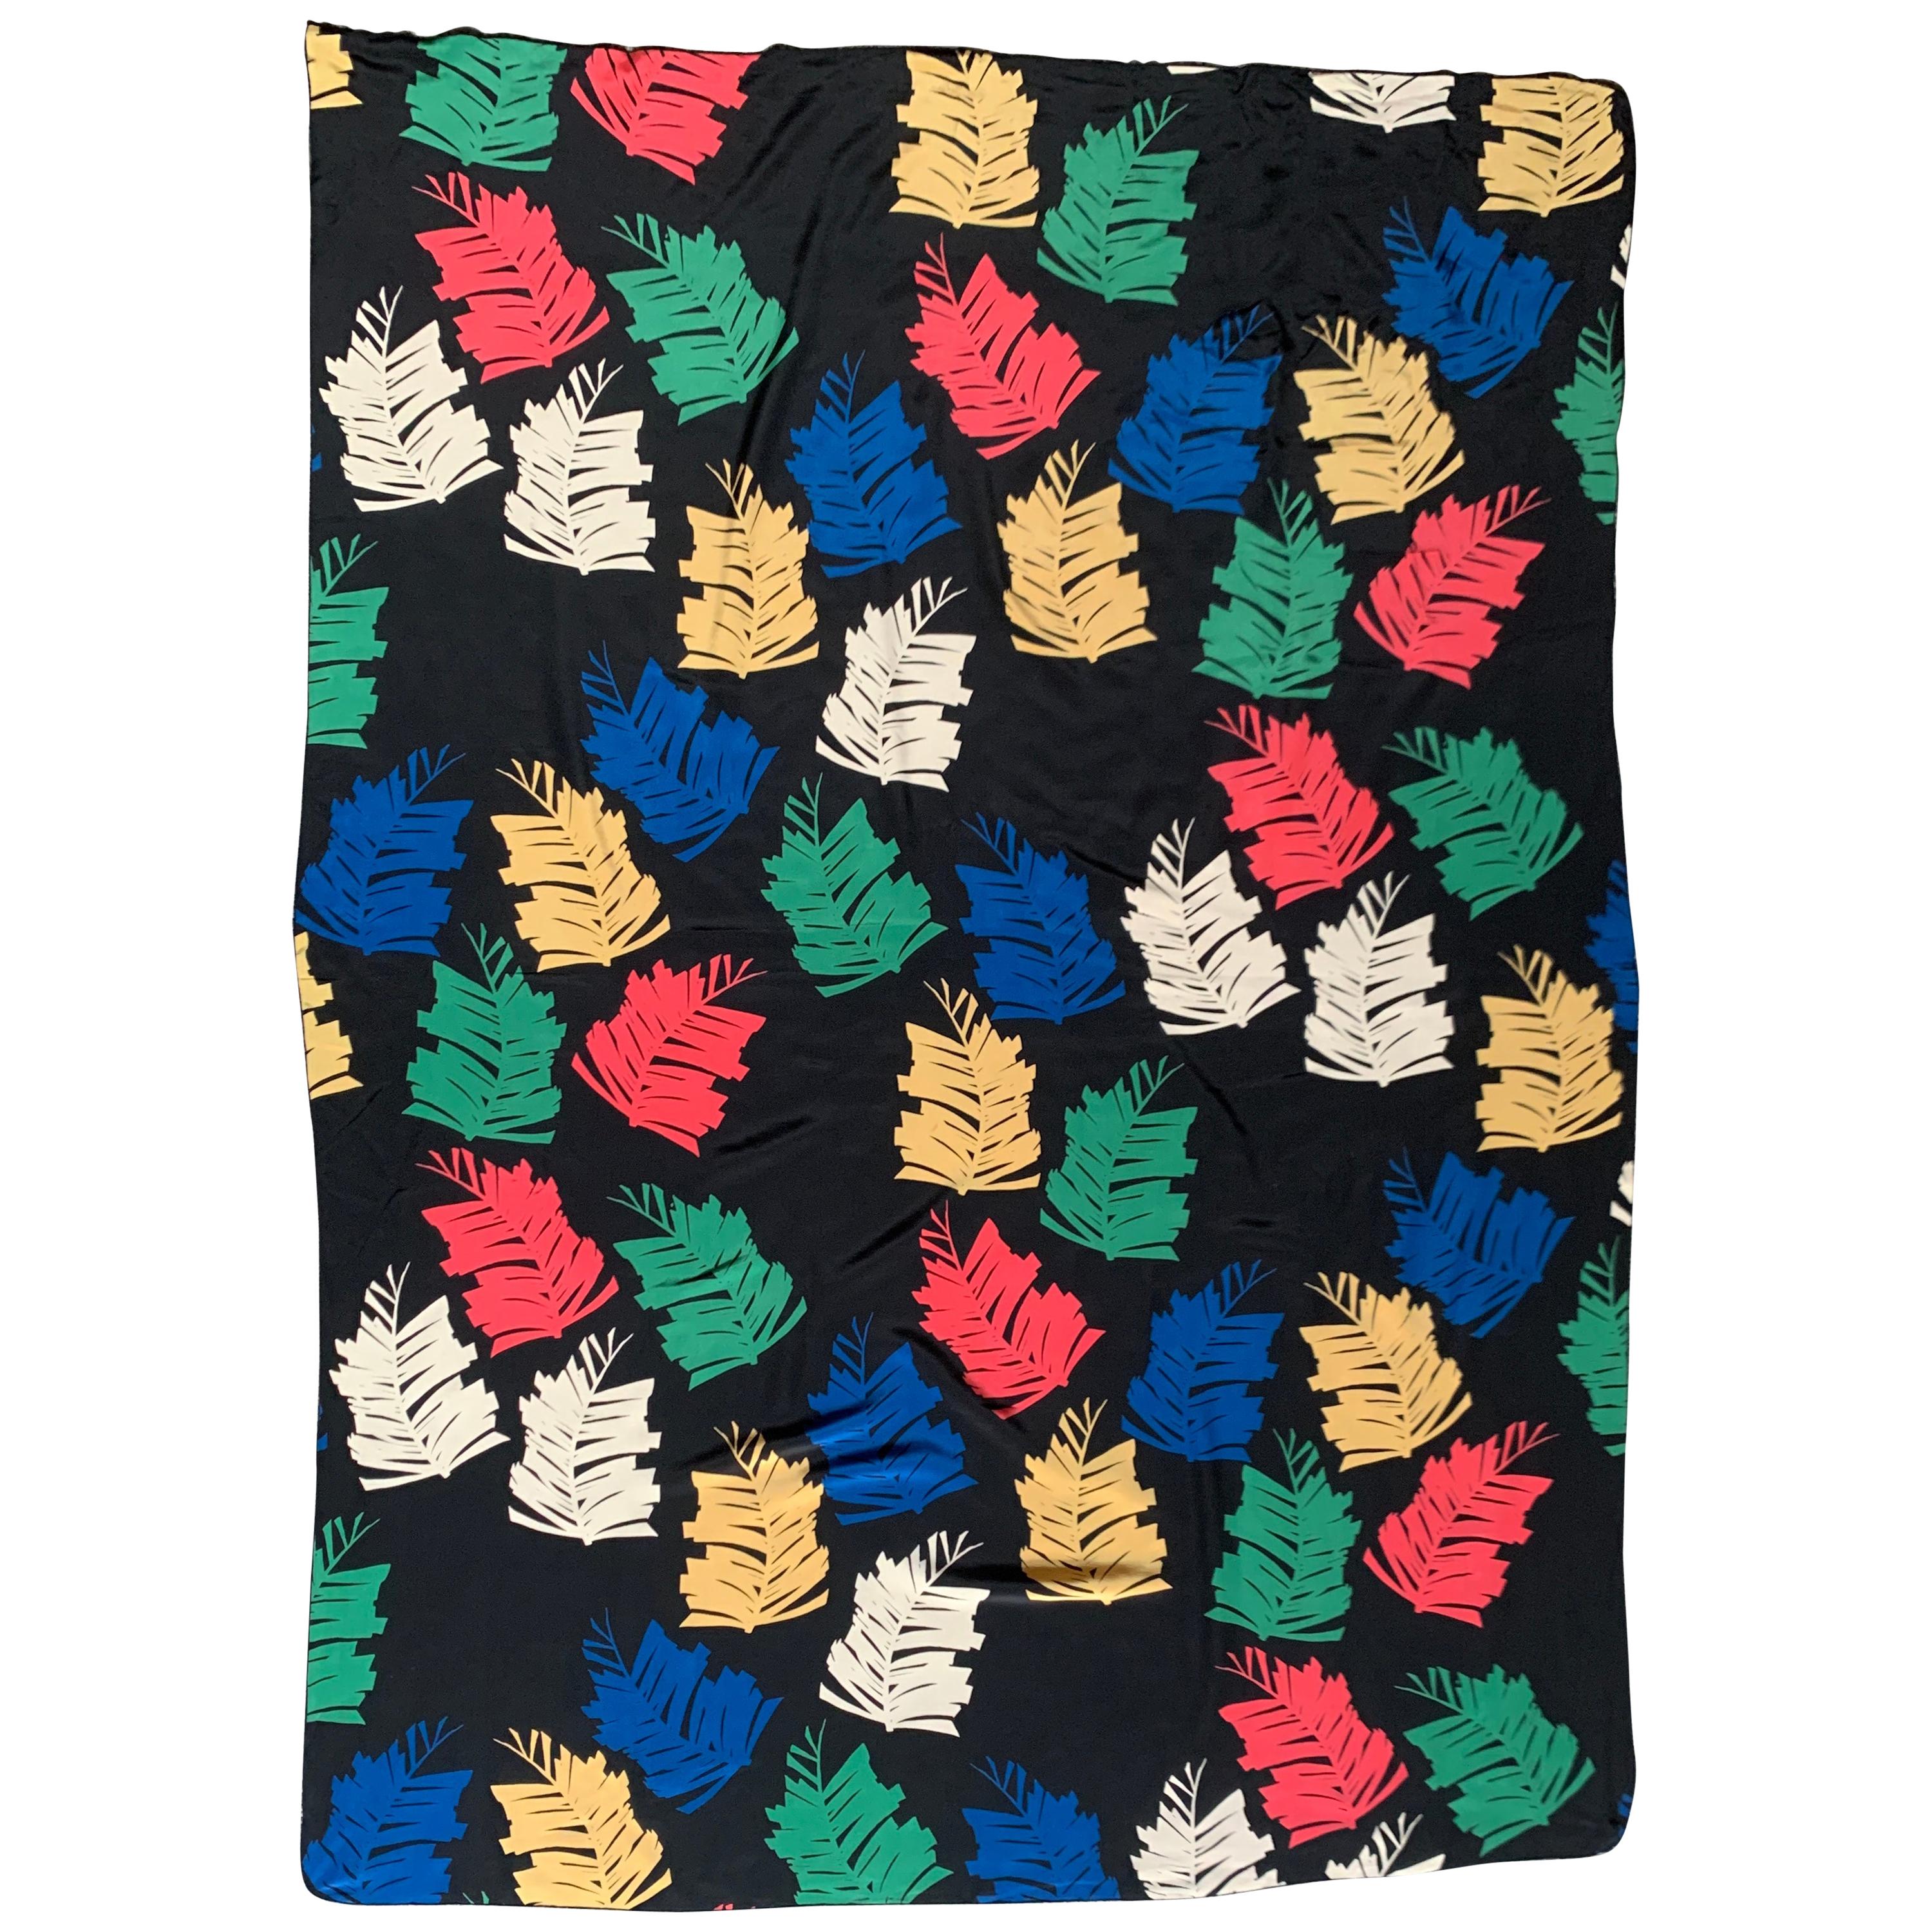 Michaele Vollbracht - Grand foulard noir ou sarong en imprimé fougère multicolore